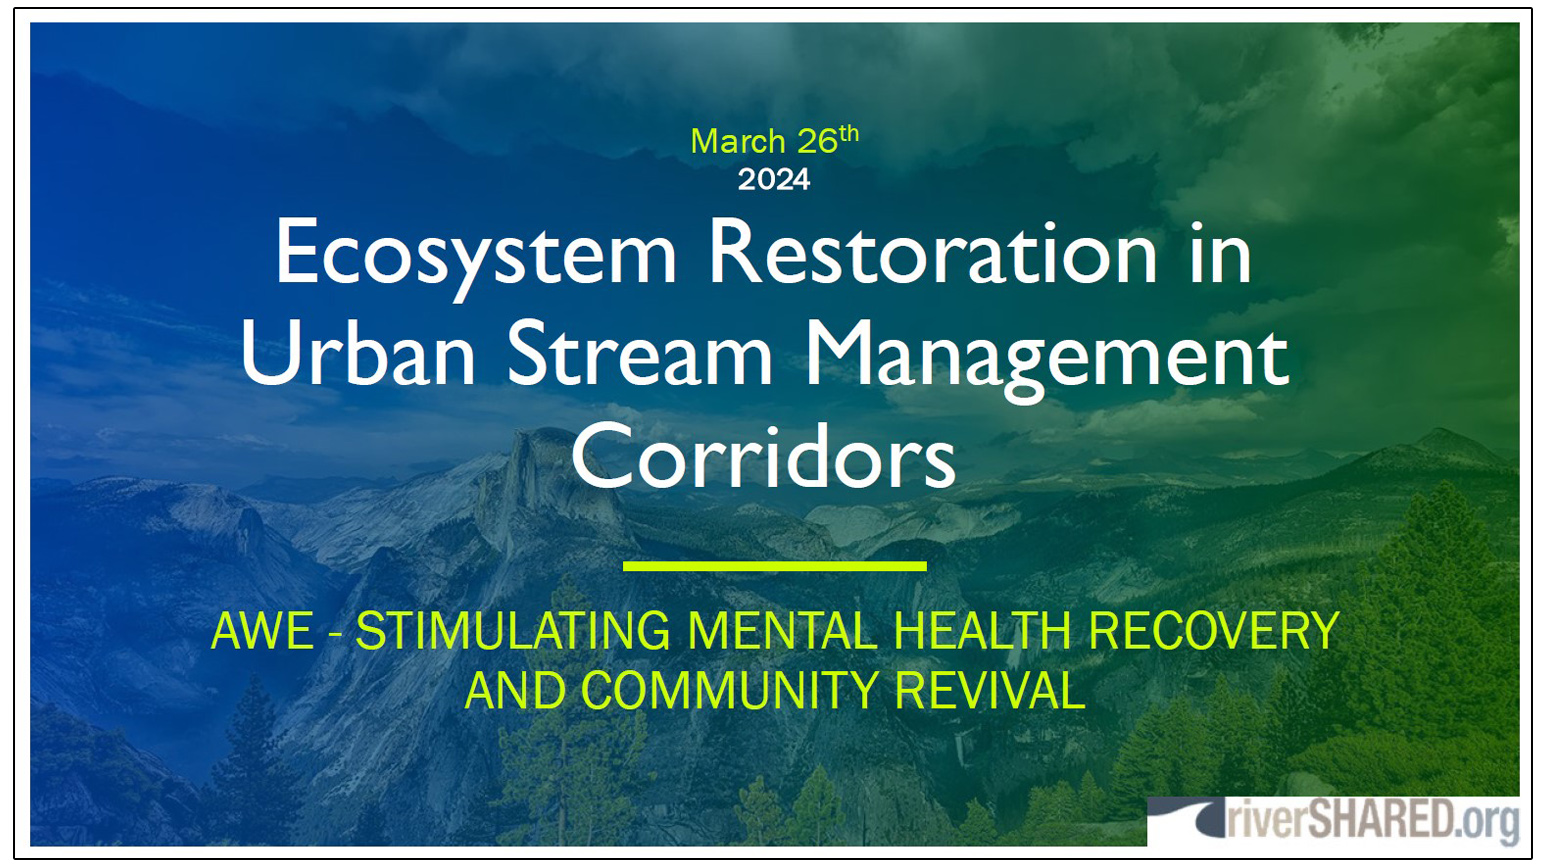 Ecosystem Restoration in Urban Stream Management Corridors - presentation by David Bidelspach